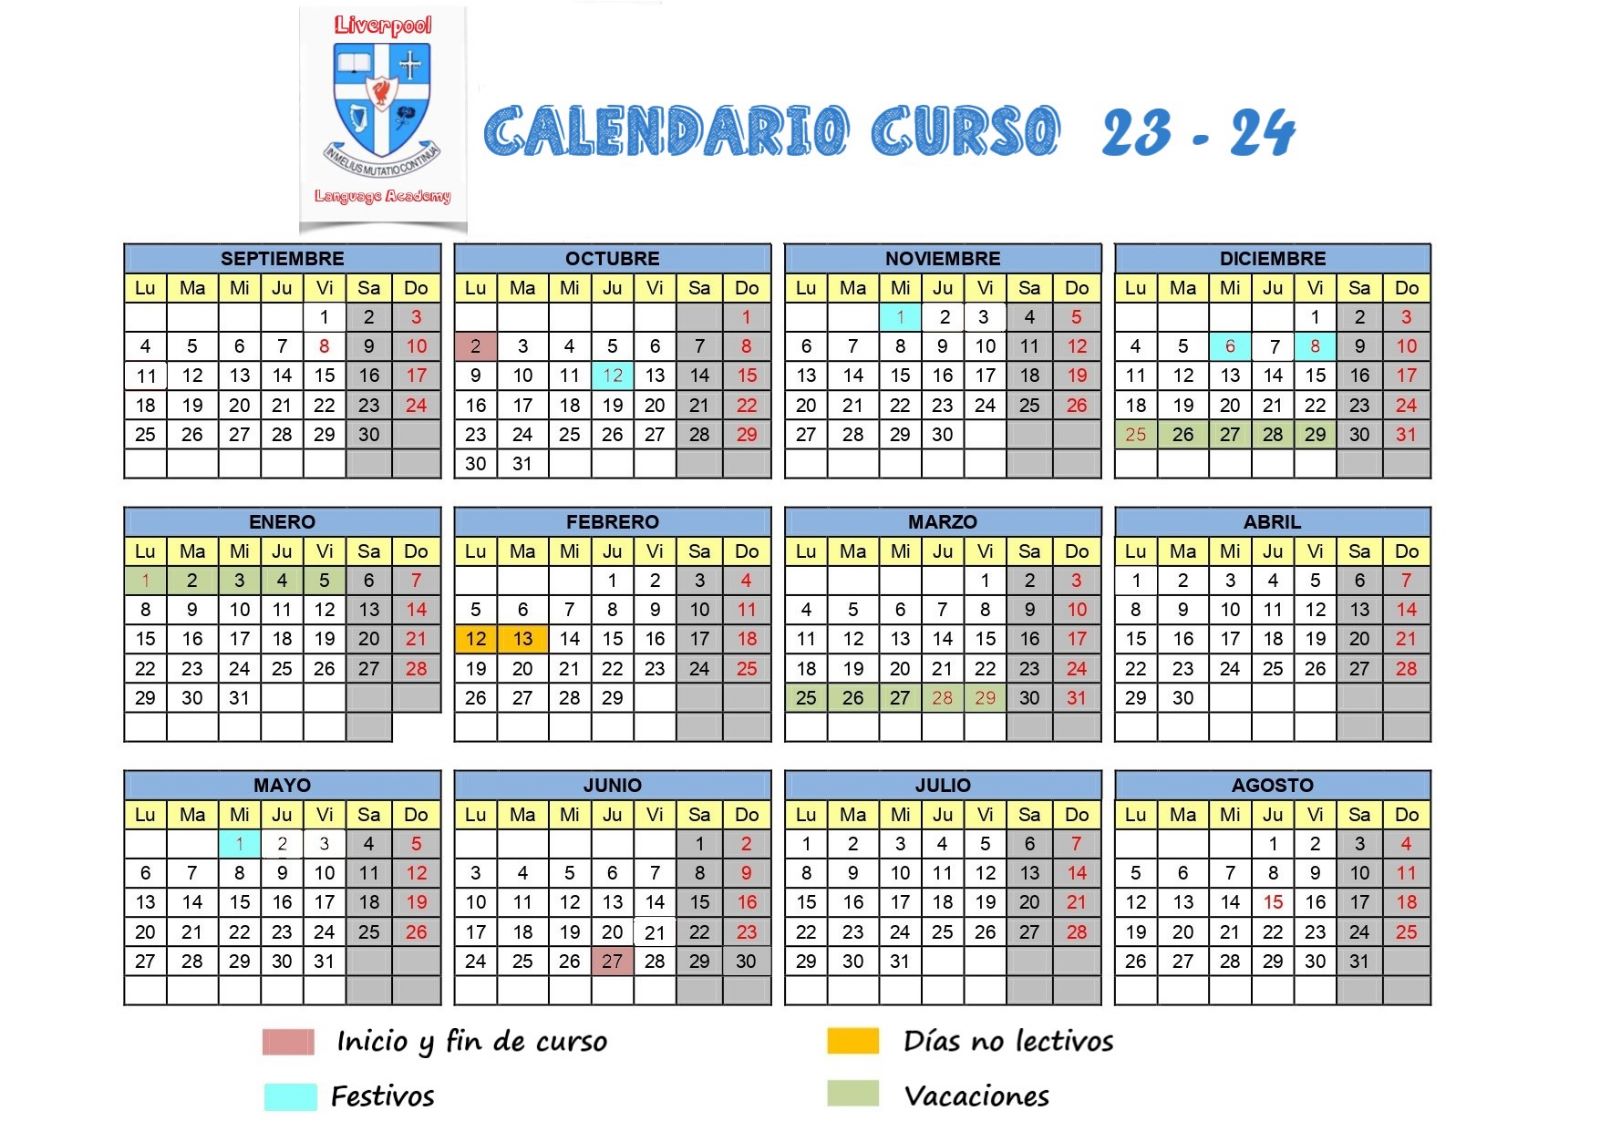 Calendario curso 23-24 }}